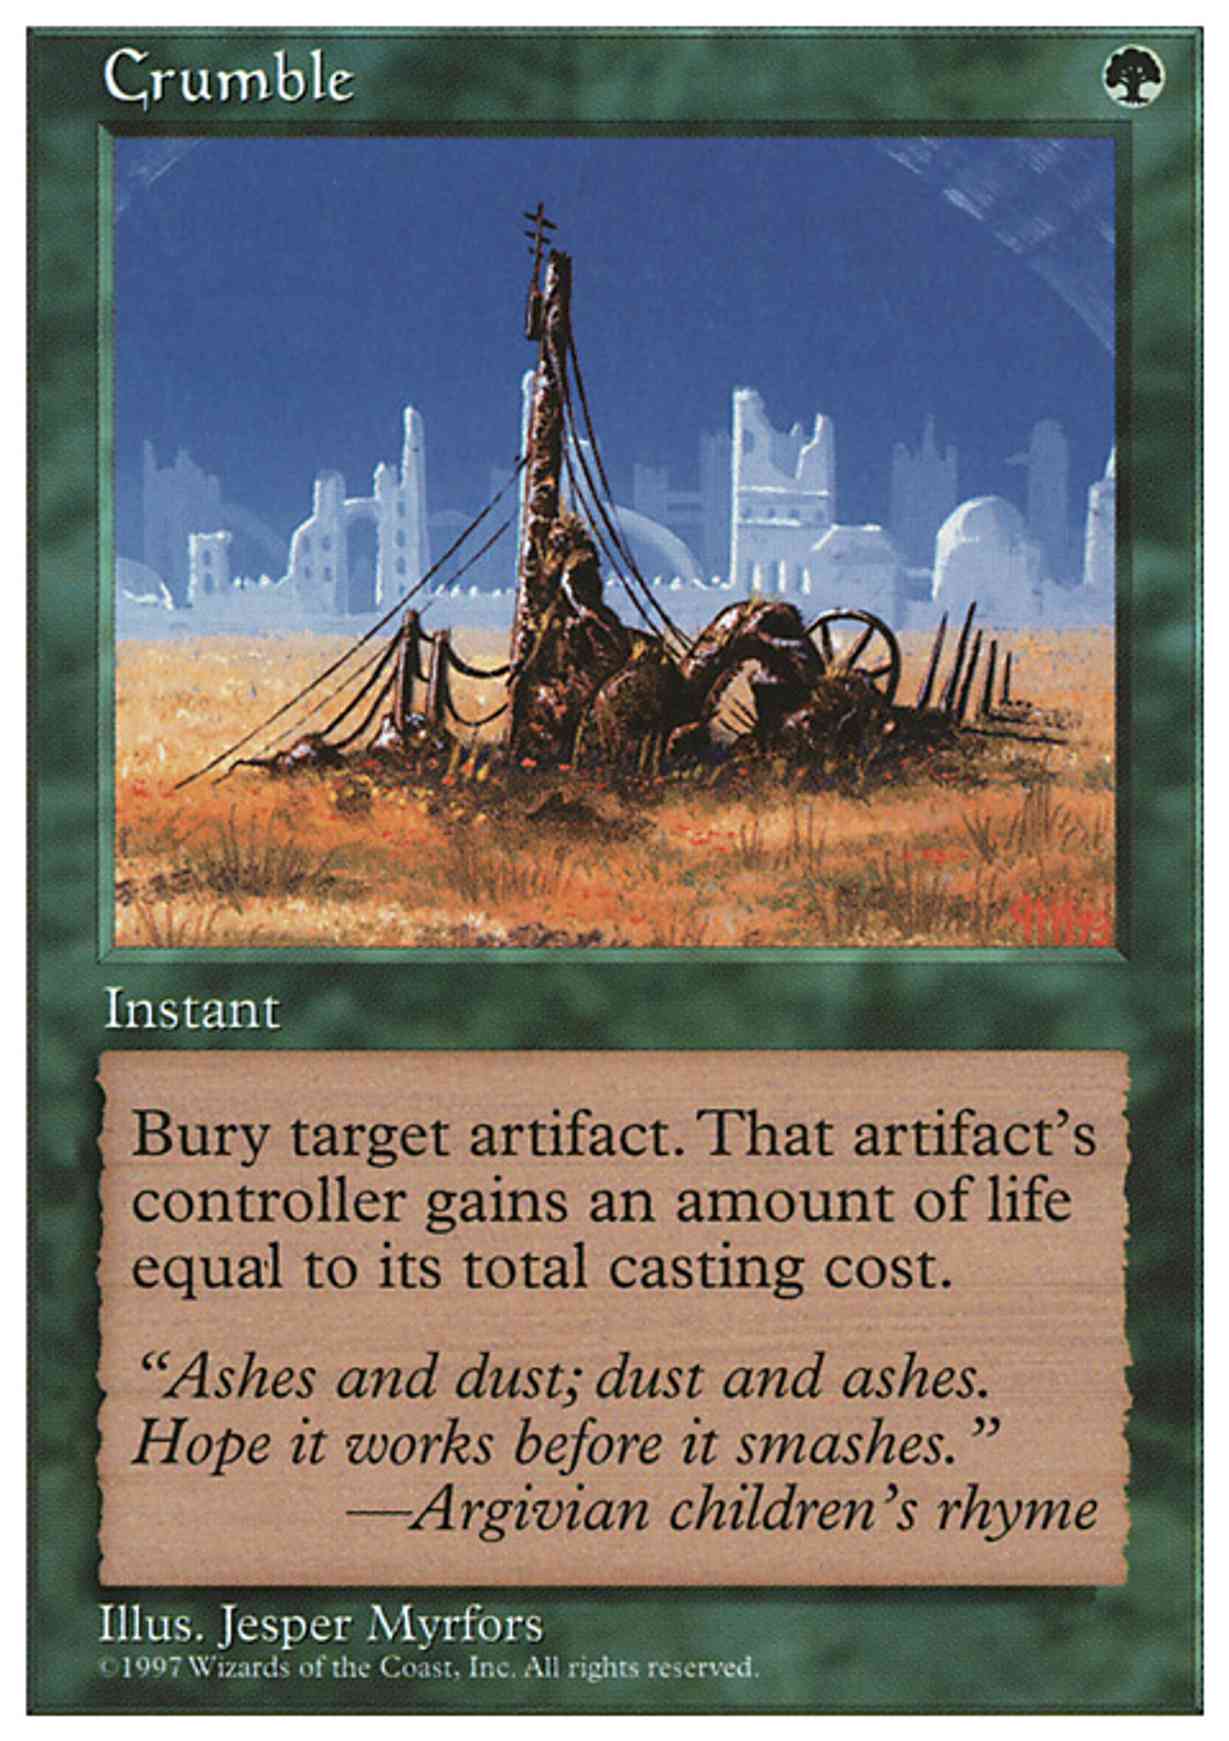 Crumble magic card front